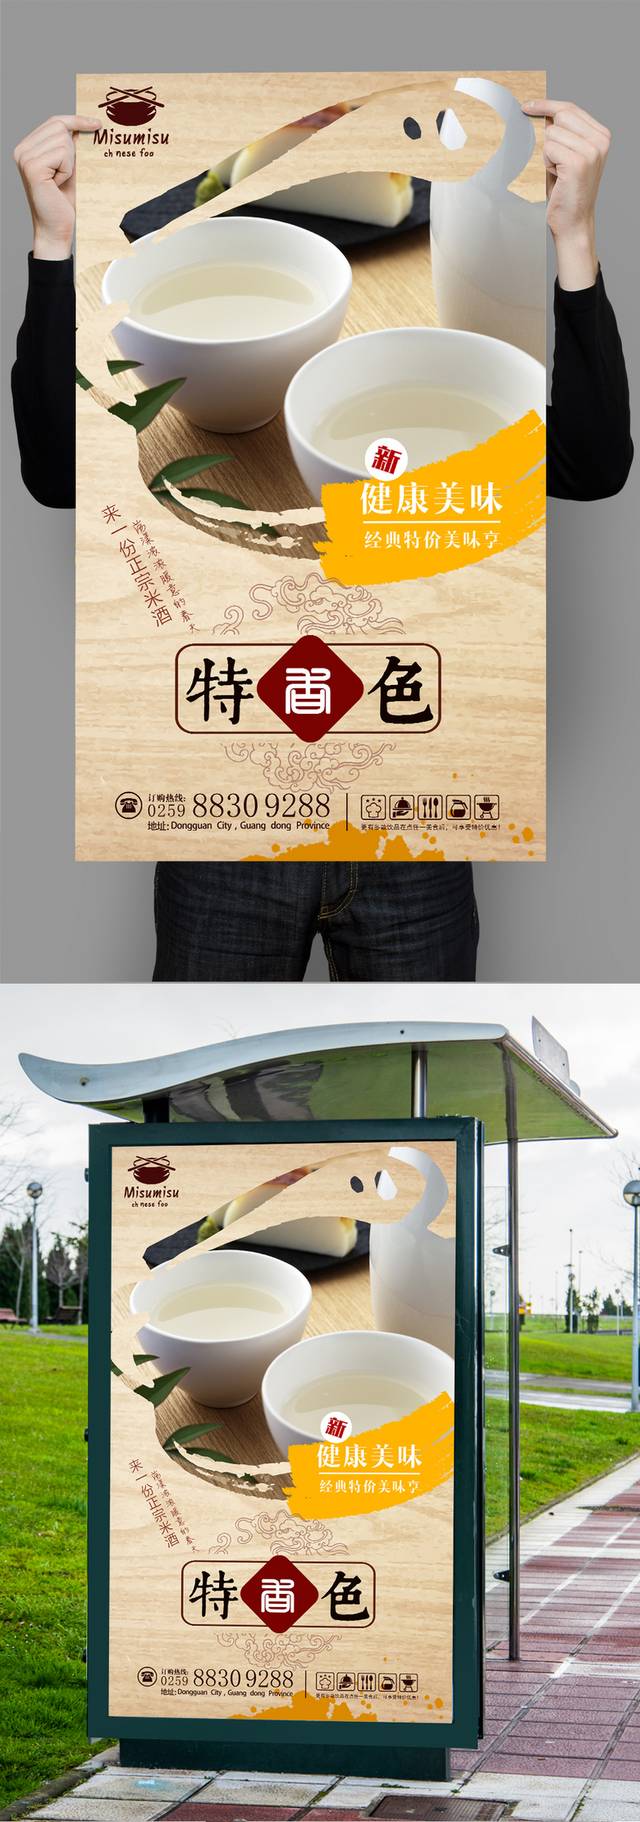 创意米酒宣传海报设计